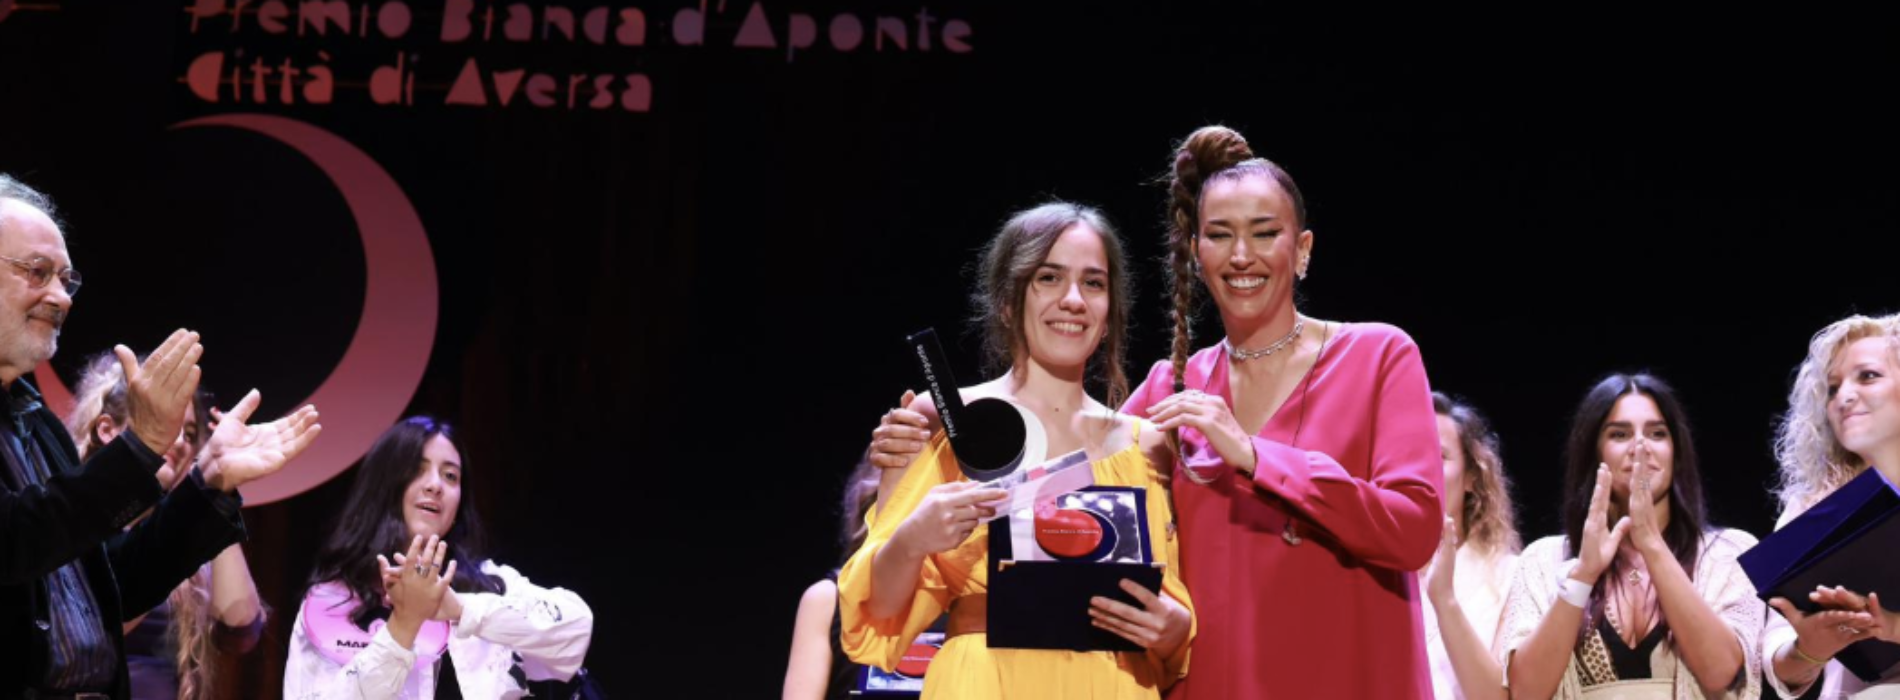 Premio Bianca d’Aponte, Chiara Iannicello è la vincitrice